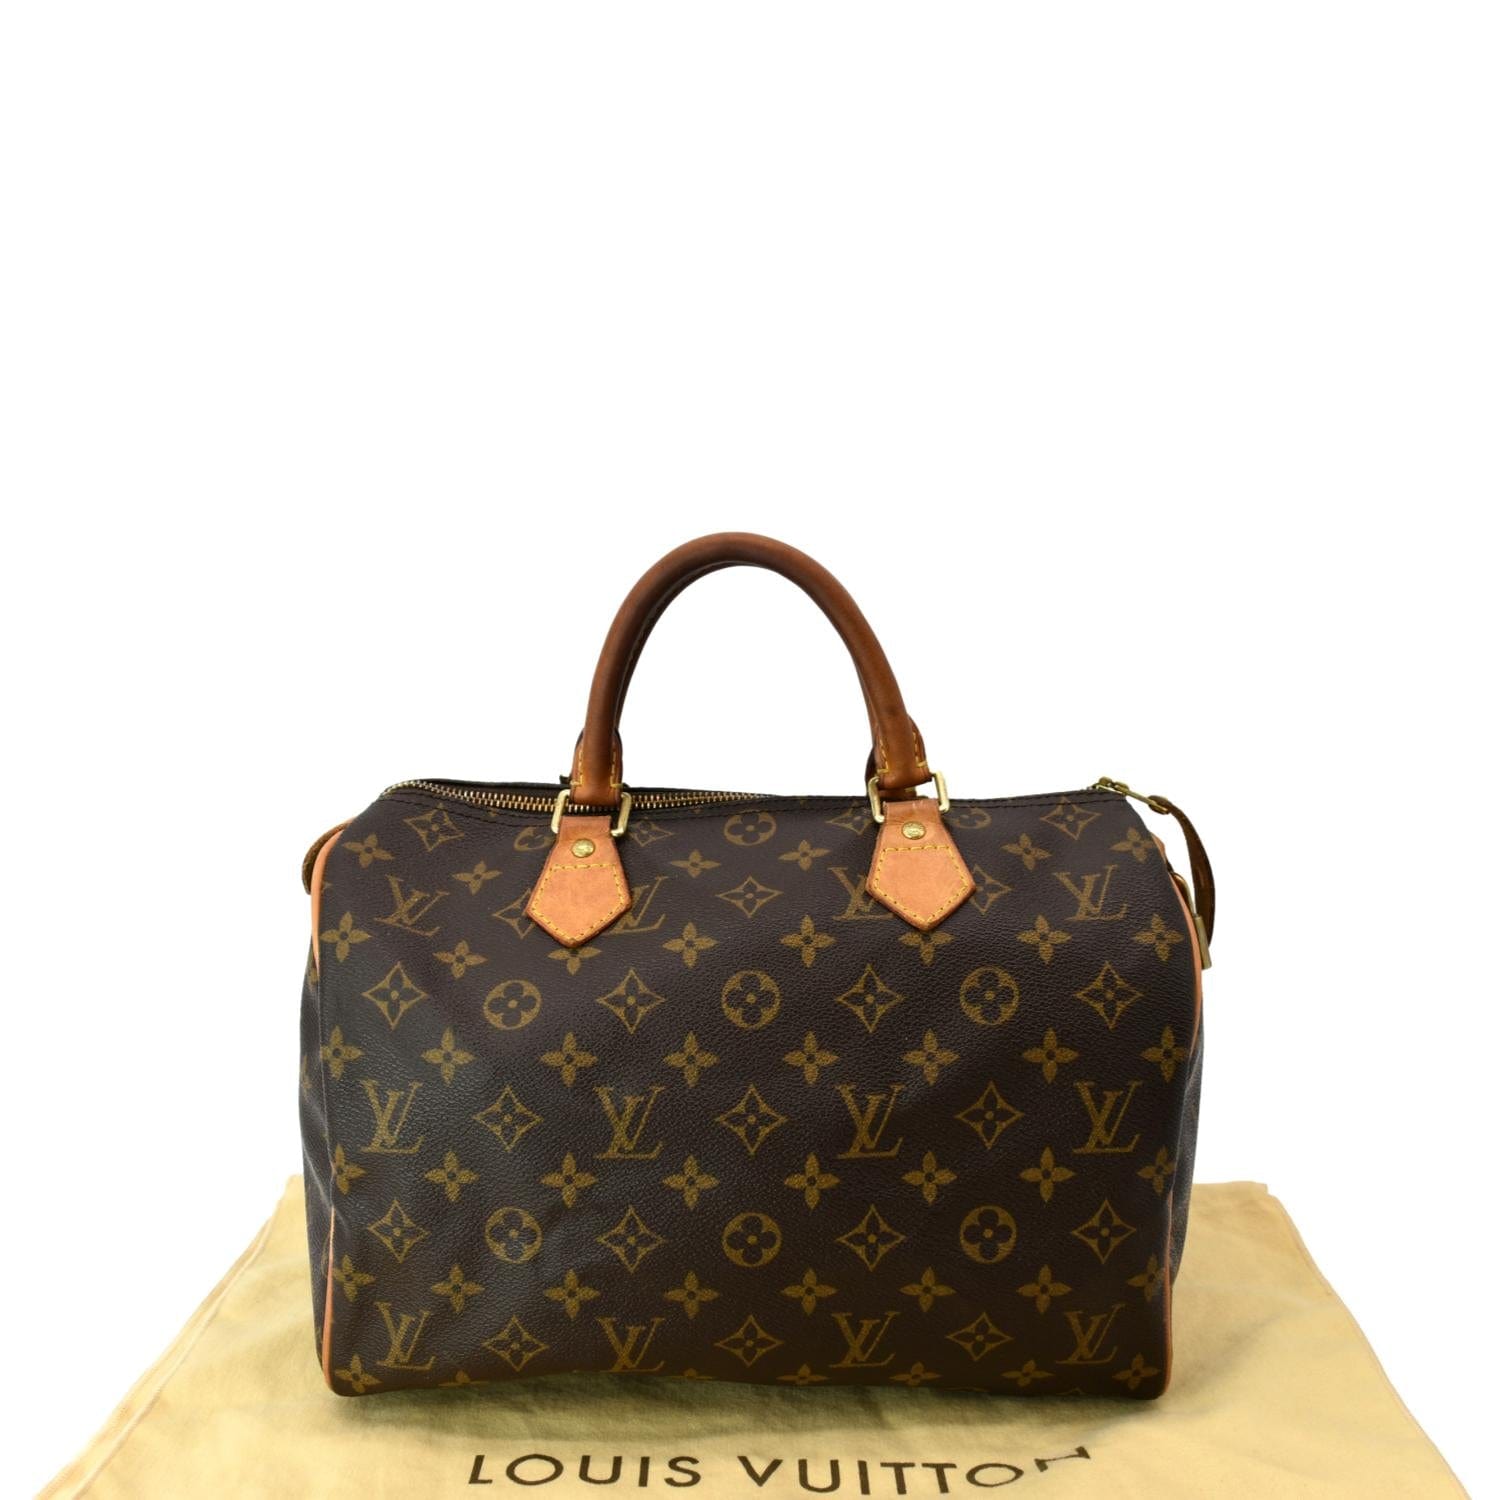 LOUIS VUITTON Handbag M40900 Speedy 30 Bandriere Monogram unplant Brown  Women Used